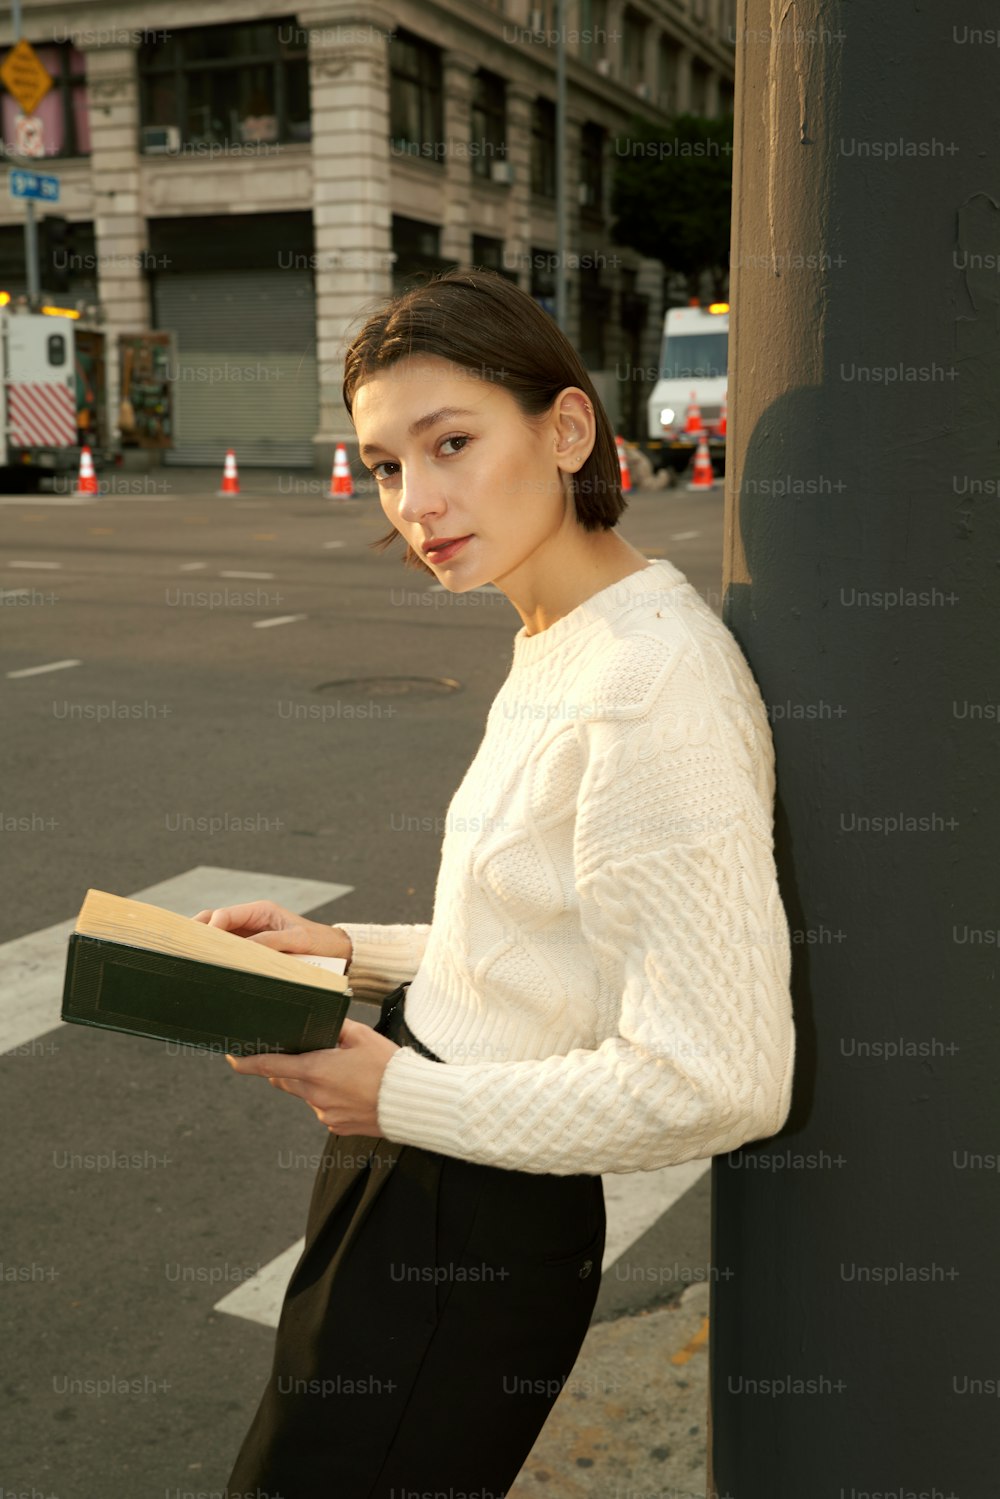 Eine Frau, die sich an eine Stange lehnt, während sie ein Buch in der Hand hält